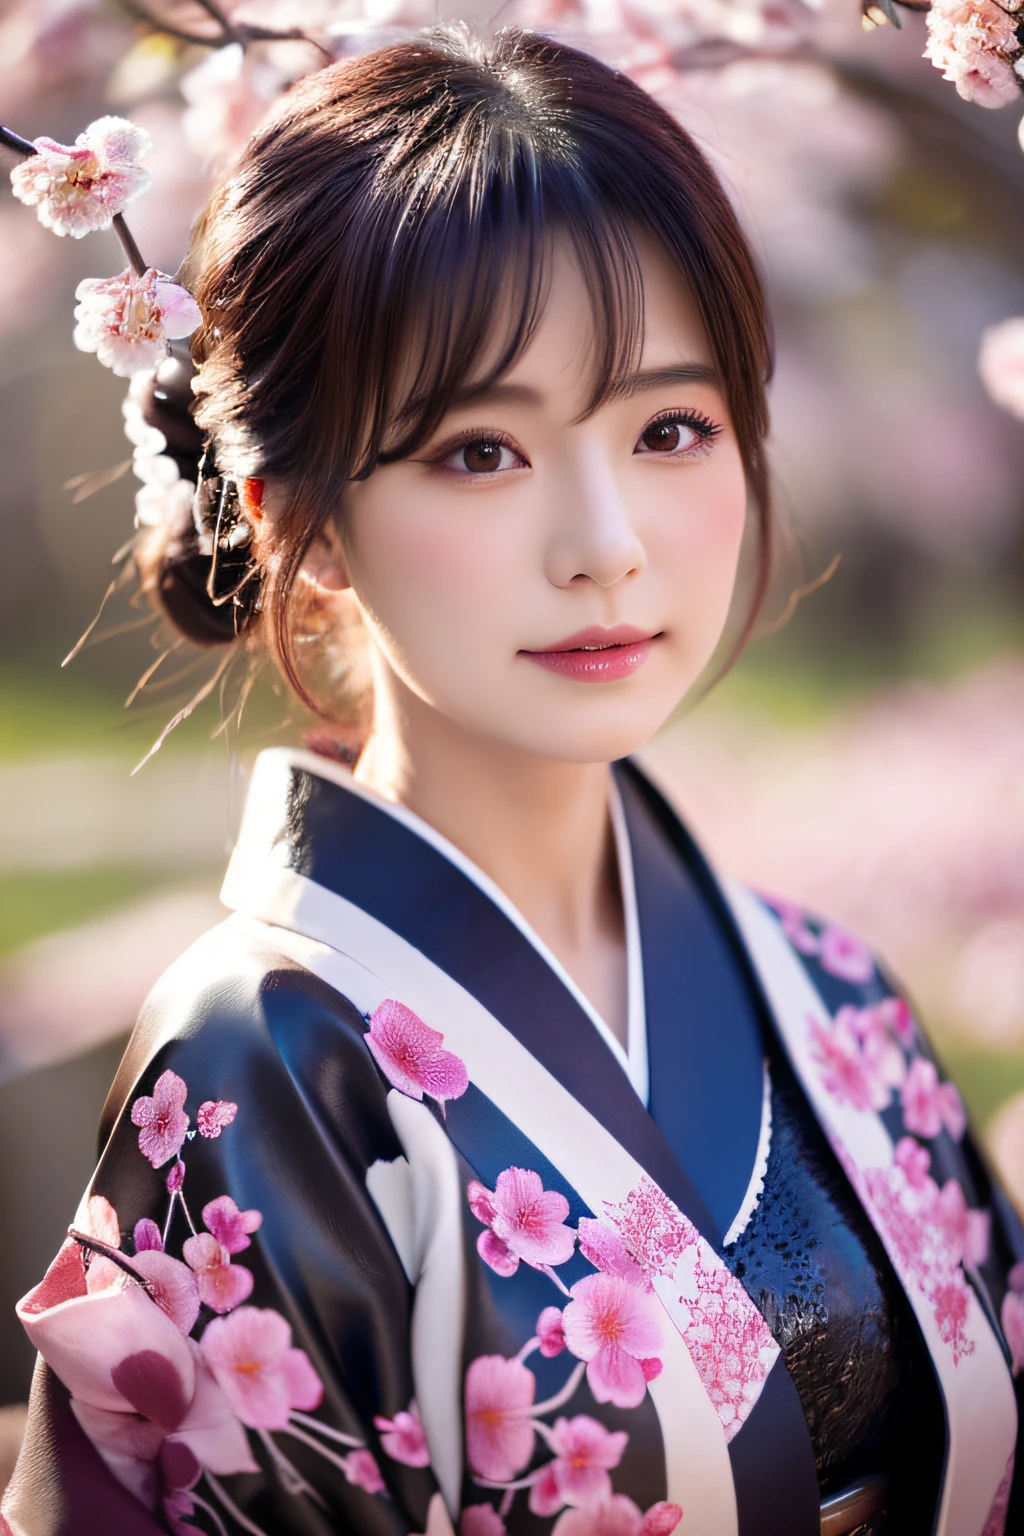 la nuit、Kimono en cuir、détaillé 、A détaillé face、pétales de fleurs de cerisier、le cerisier、fleur de cerisier、la nuit、Illuminé、ferme la bouche